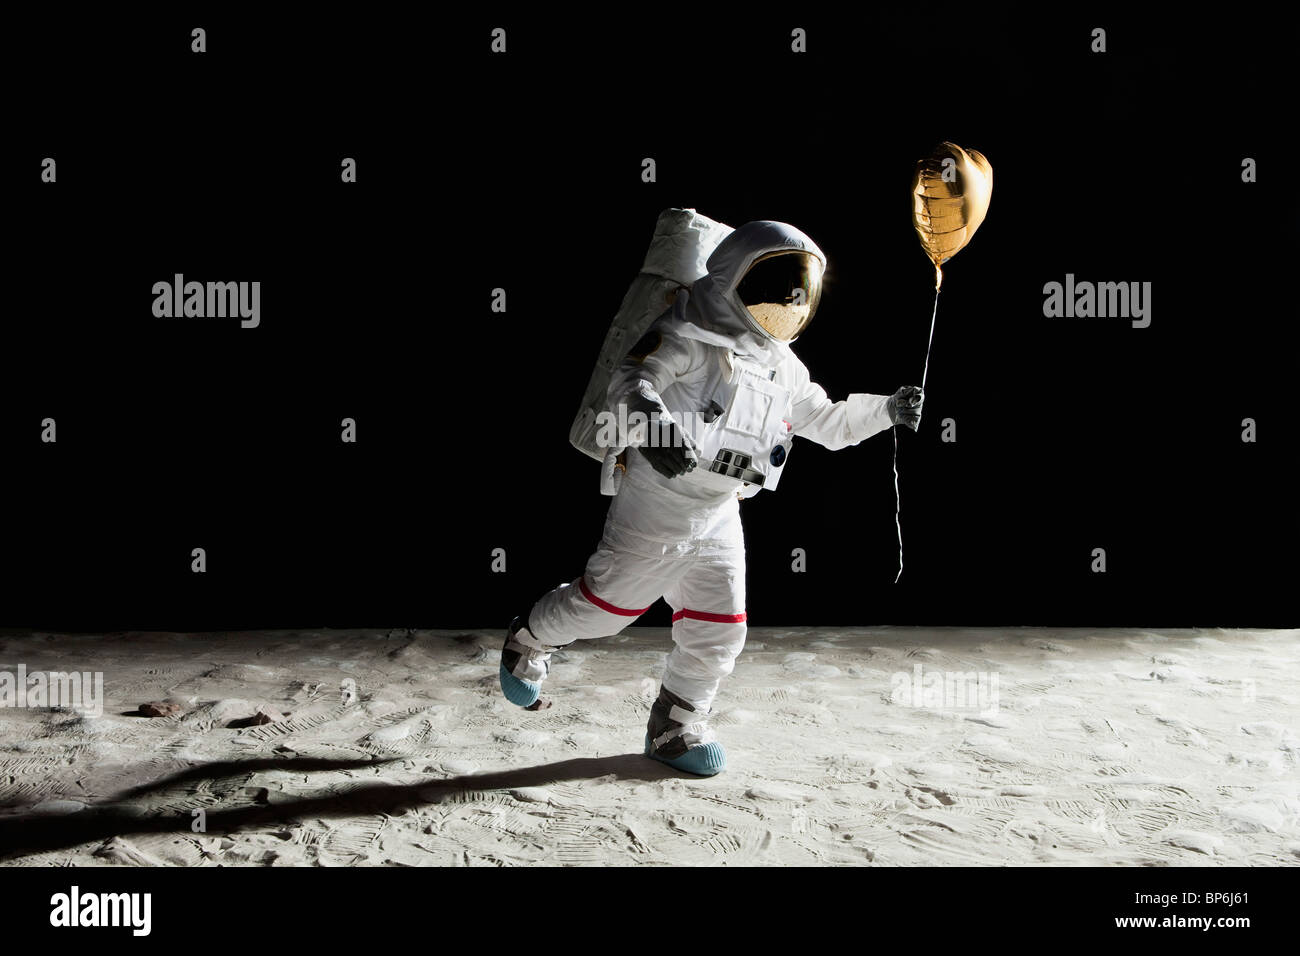 Un astronauta sulla luna tenendo un cuore a forma di palloncino elio Foto Stock